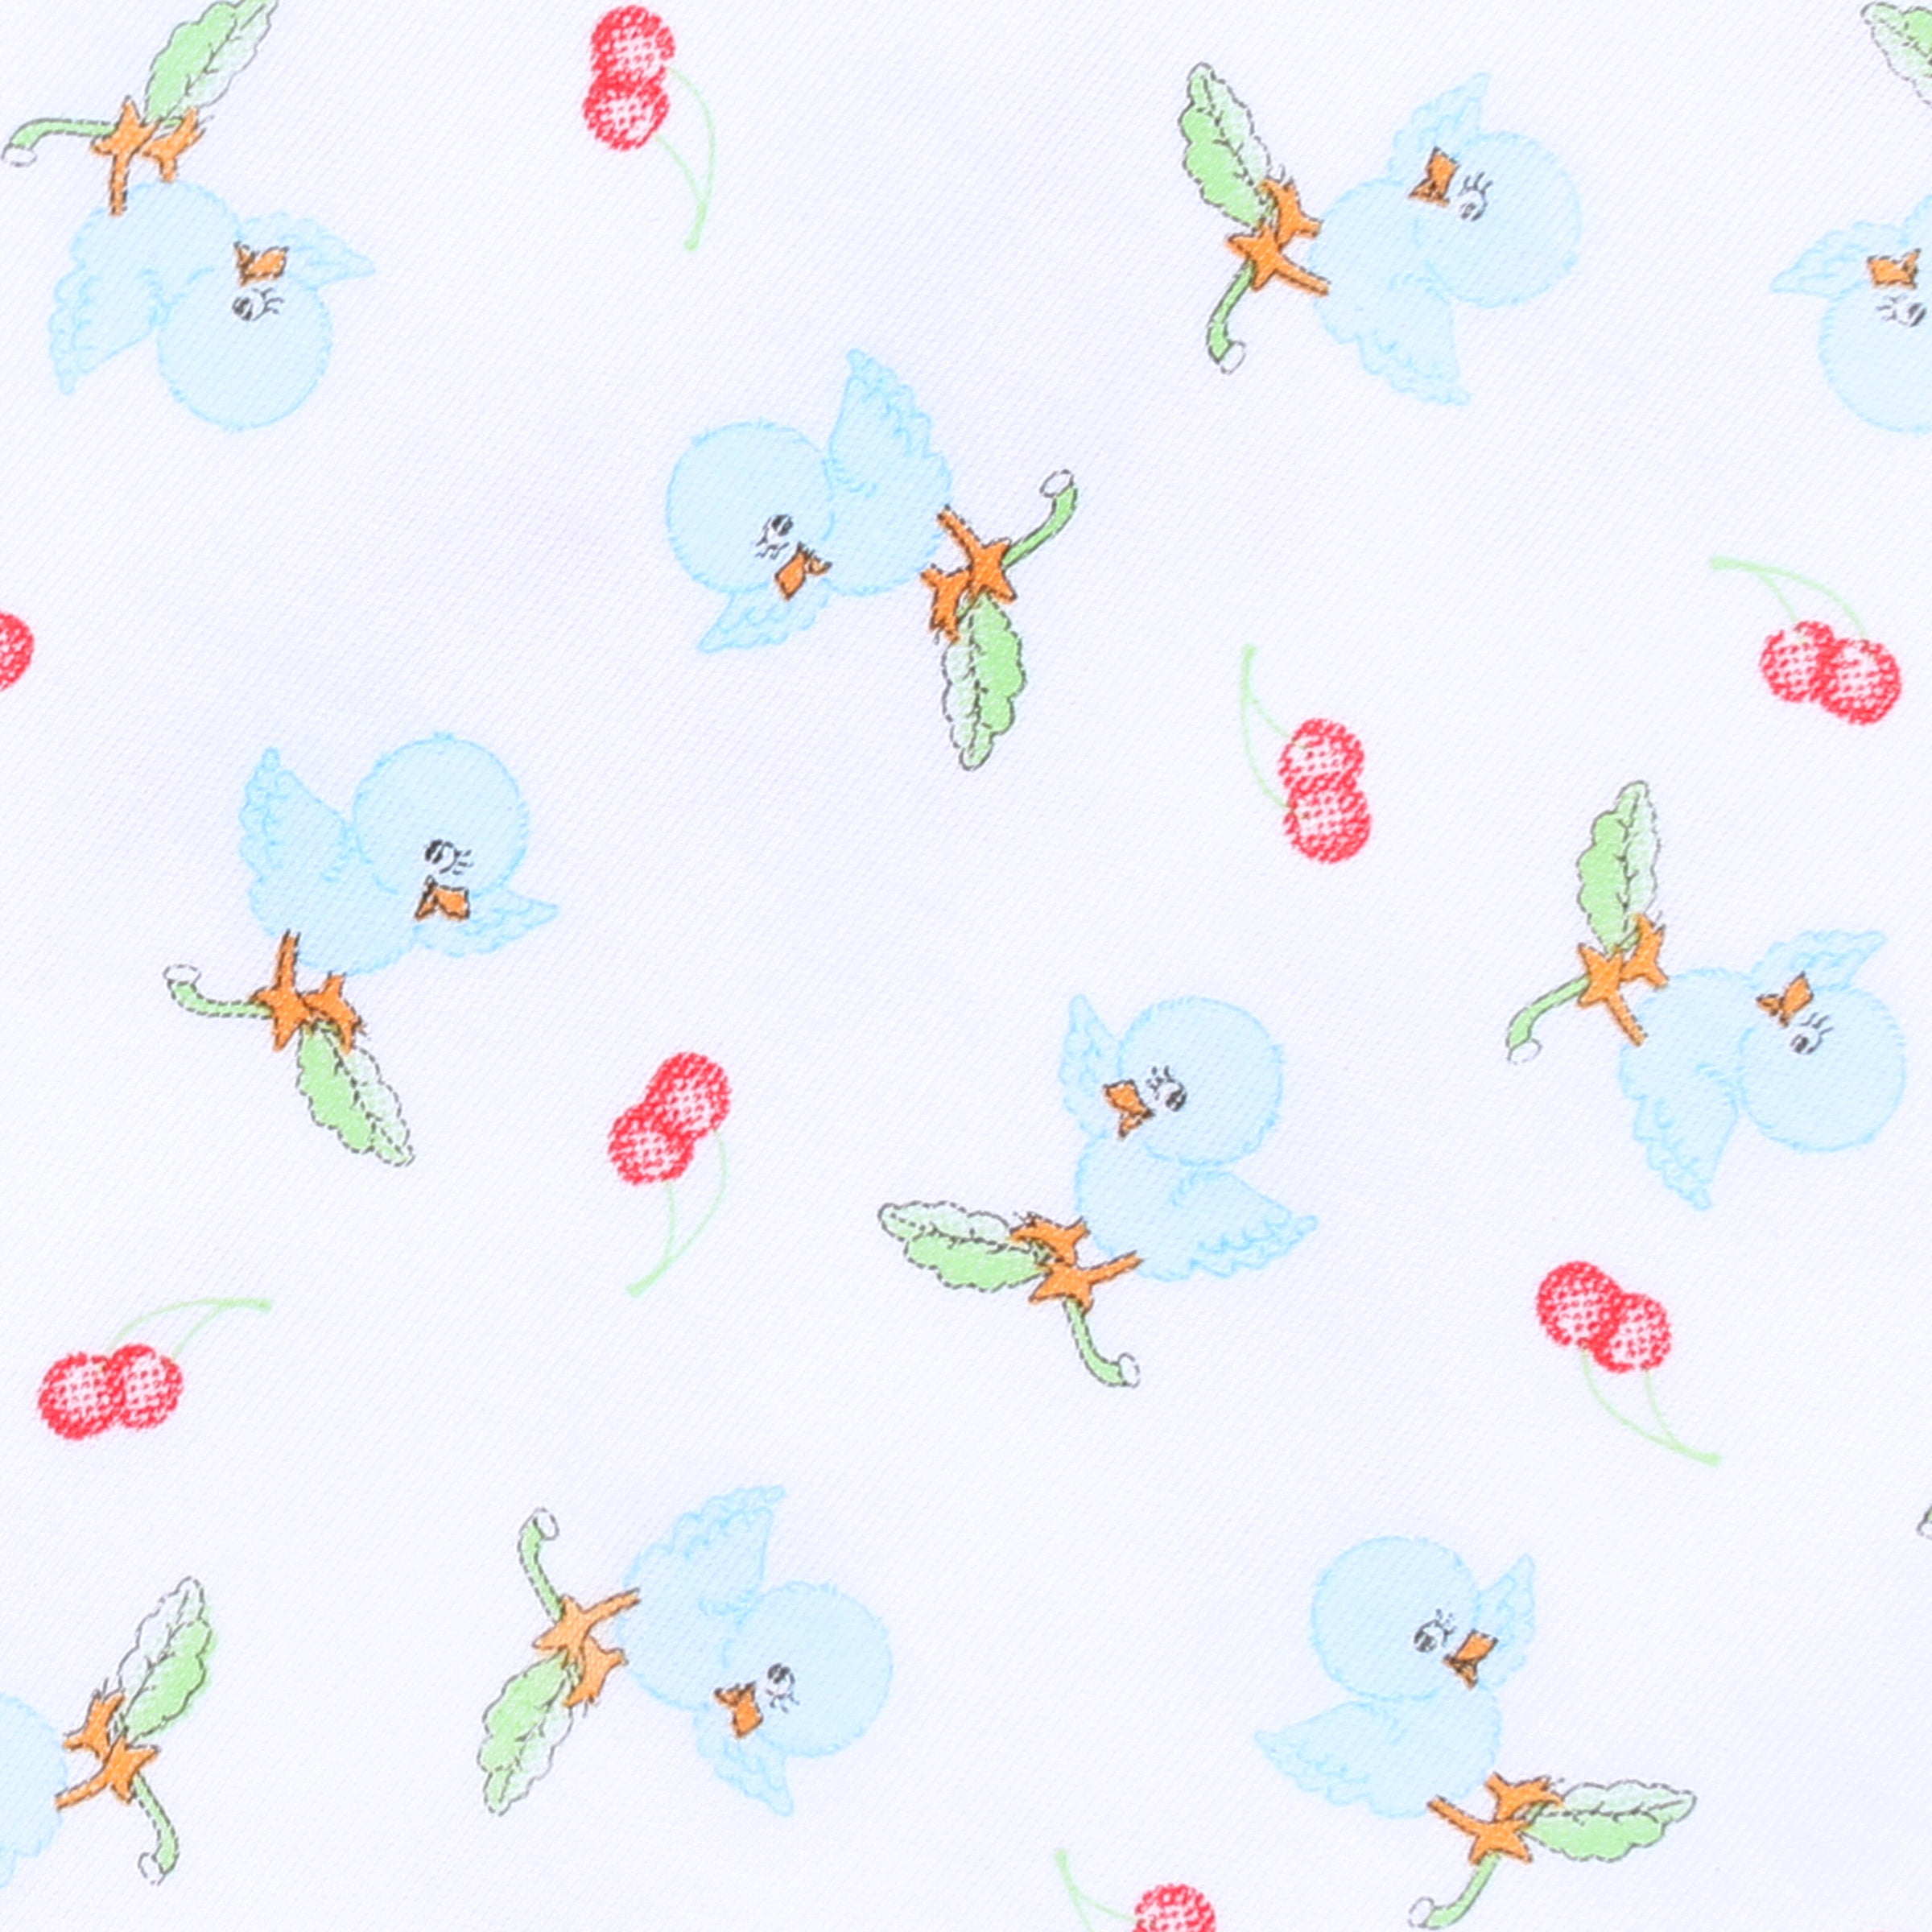 Bluebirds & Cherries Toddler Dress